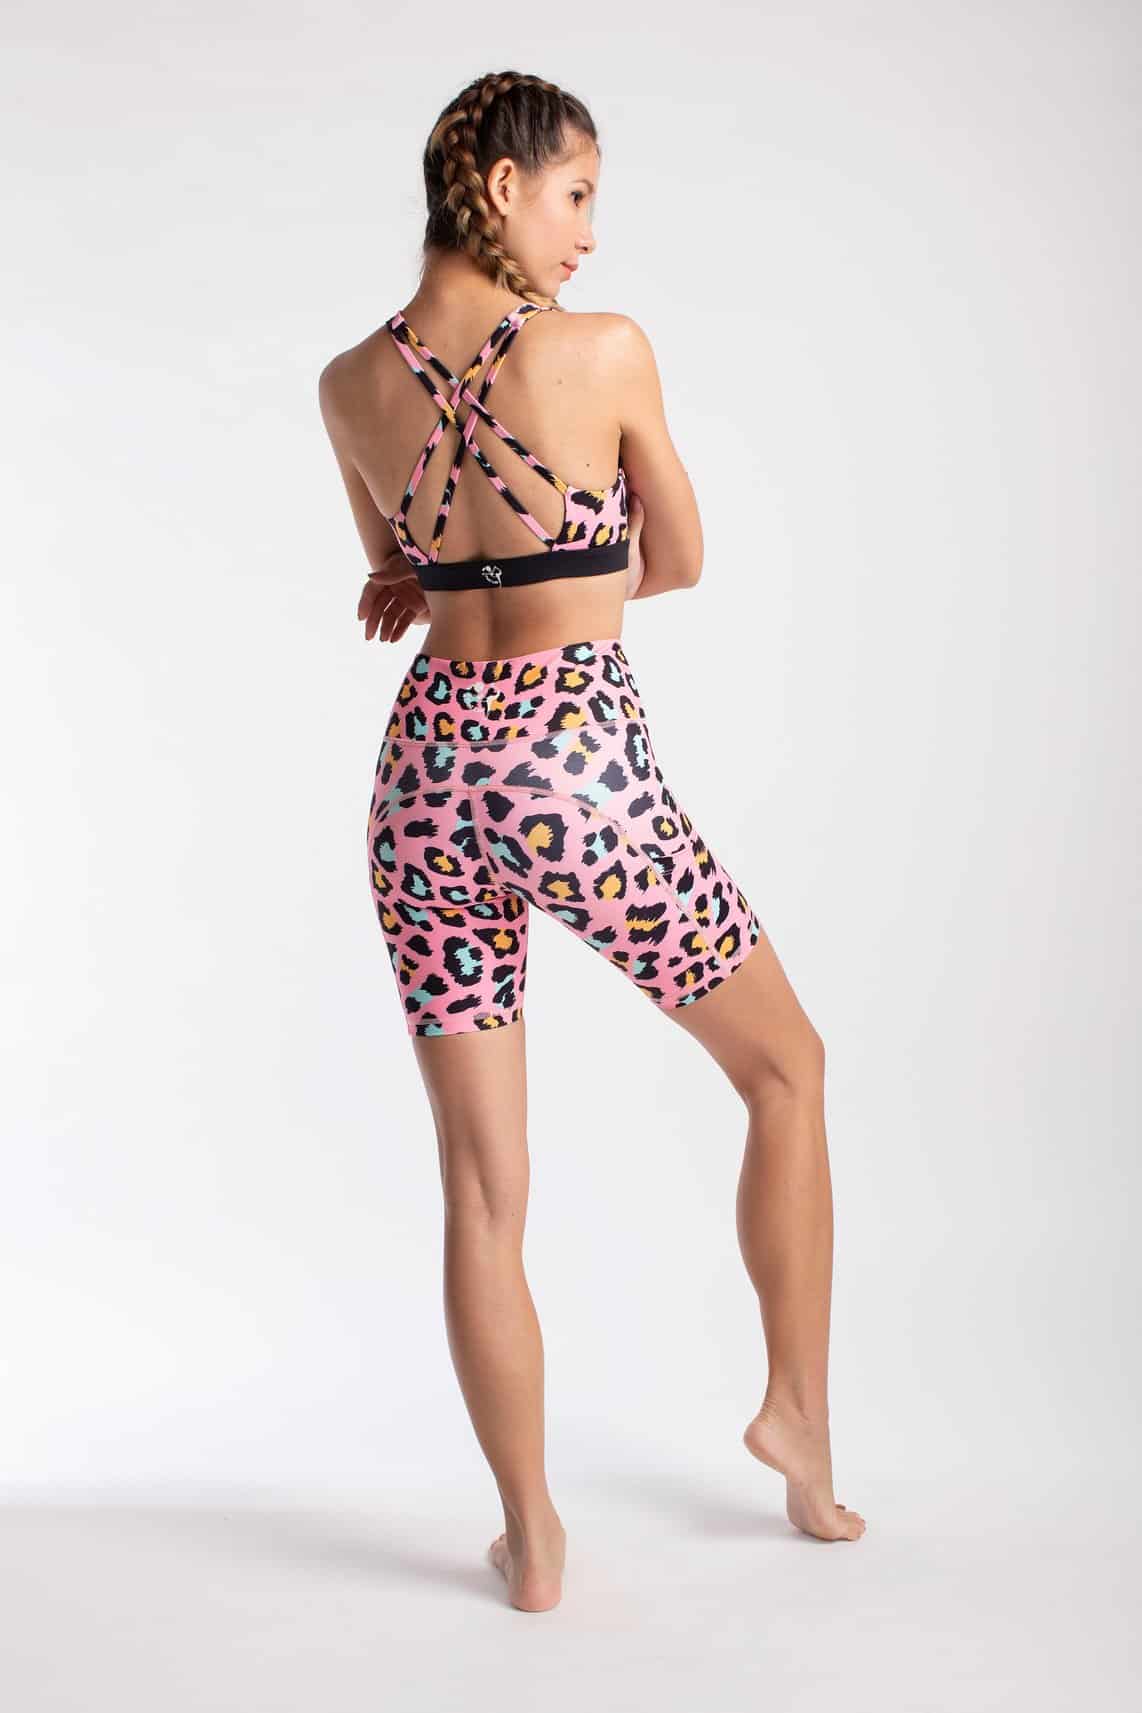 Pink spot on Biker Shorts from Flexi Lexi